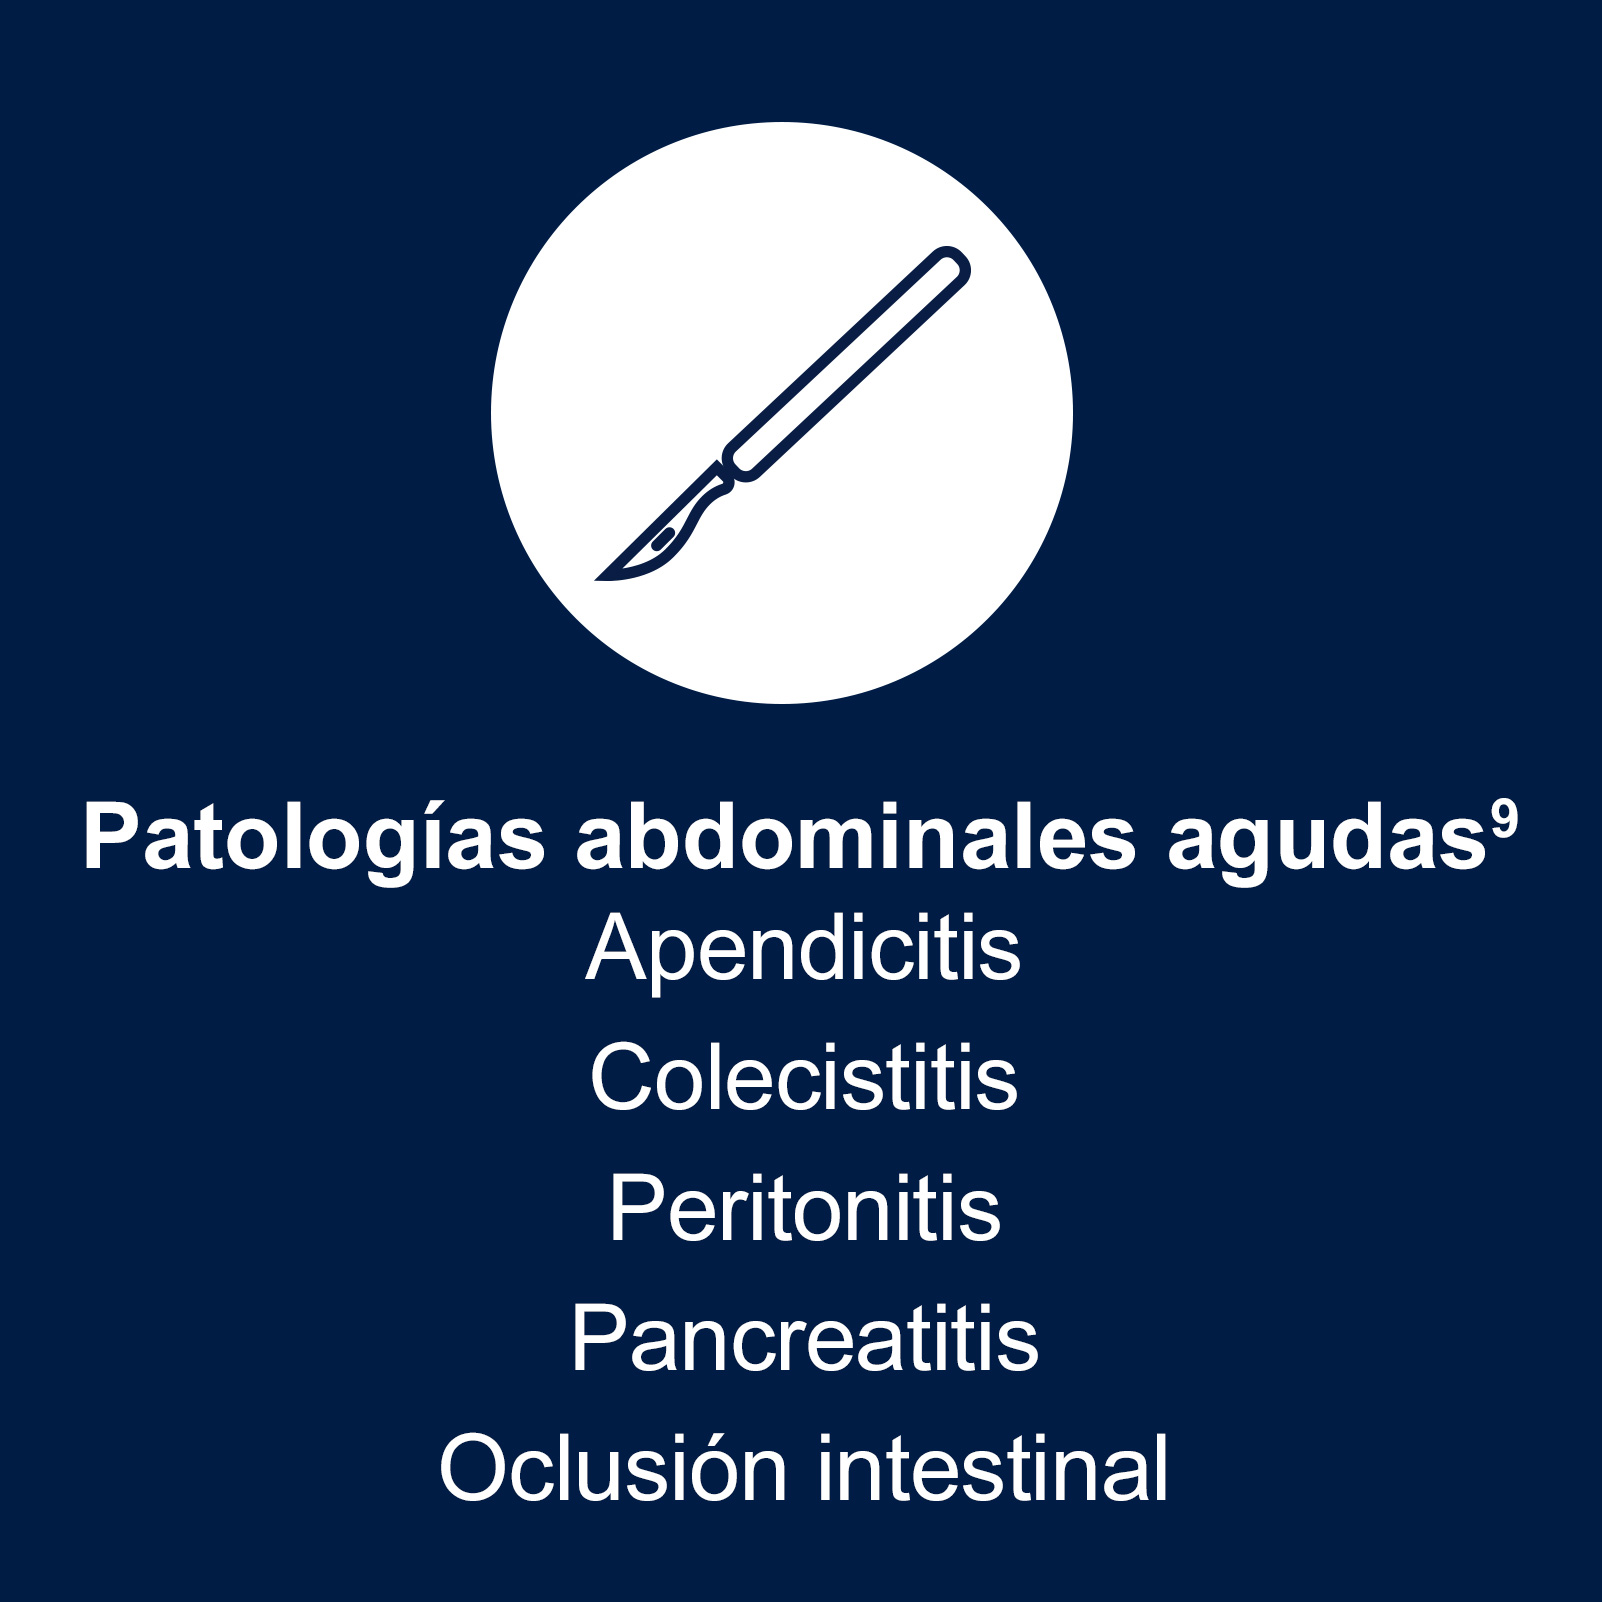 La porfiria aguda hepática  puede presentar síntomas semejantes a los de patologías abdominales agudas, como la apendicitis, la colecistitis, la peritonitis, la pancreatitis y la oclusión intestinal